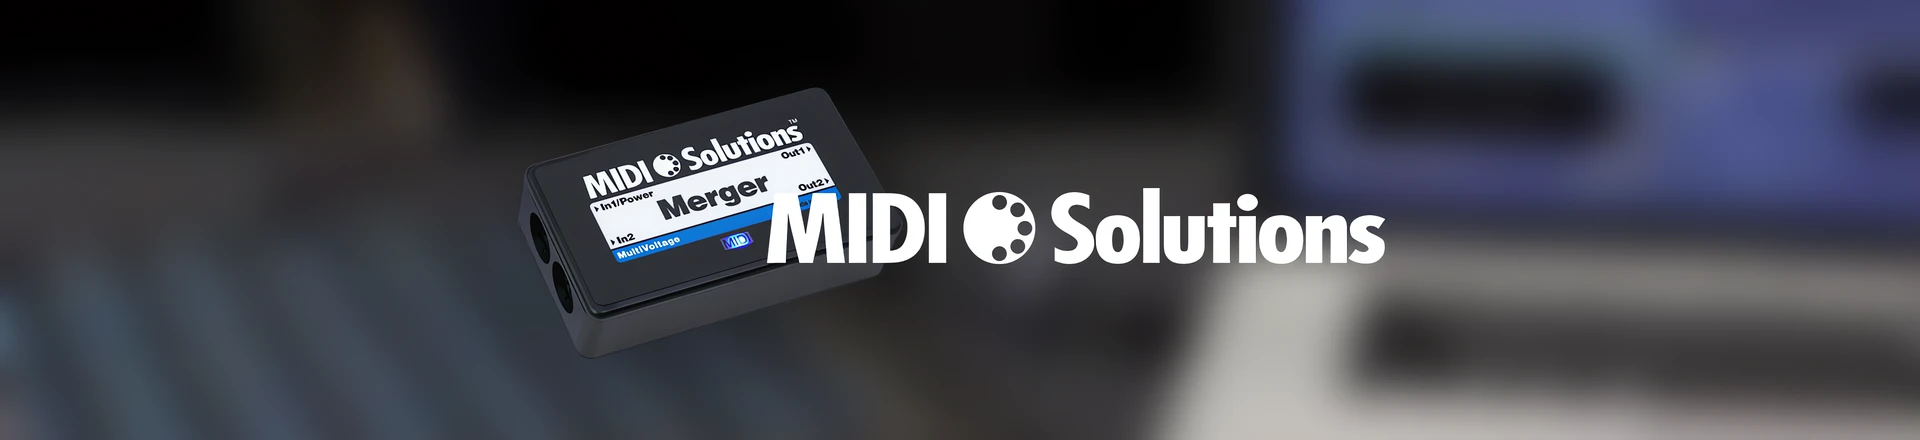 Rozwiązanie każdego problemu z MIDI... od MIDI Solutions